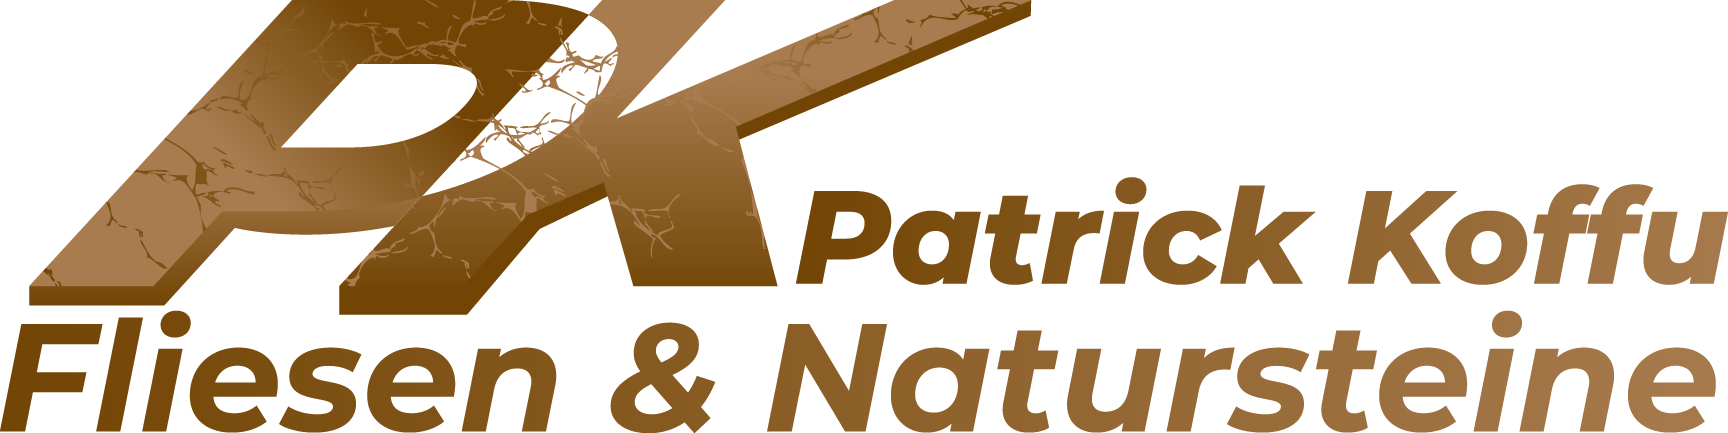 Patrick Koffu Fliesen und Natursteine logo